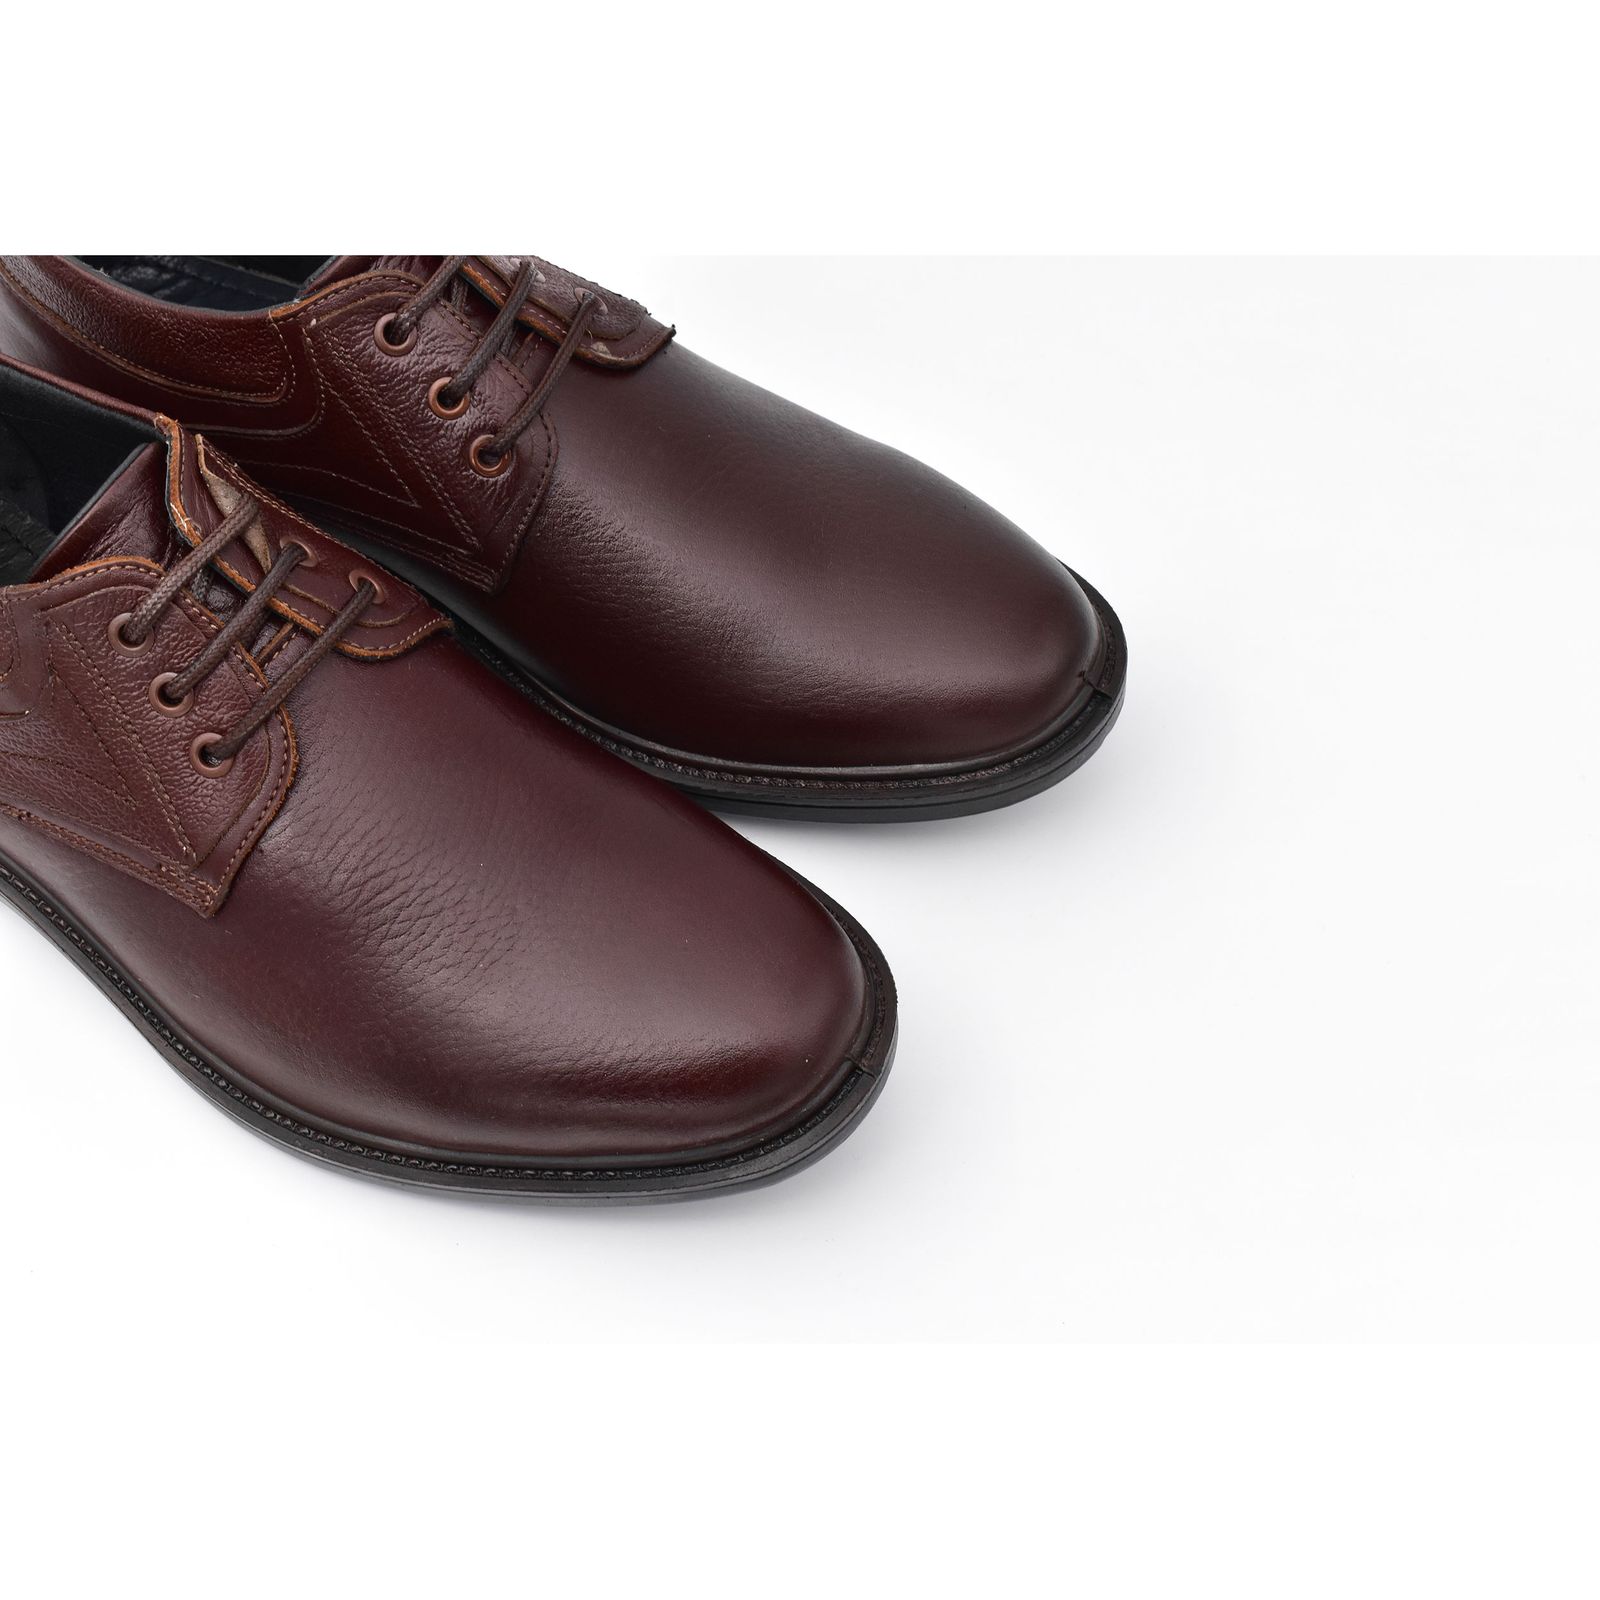 کفش مردانه پاما مدل Morano کد G1186 -  - 3